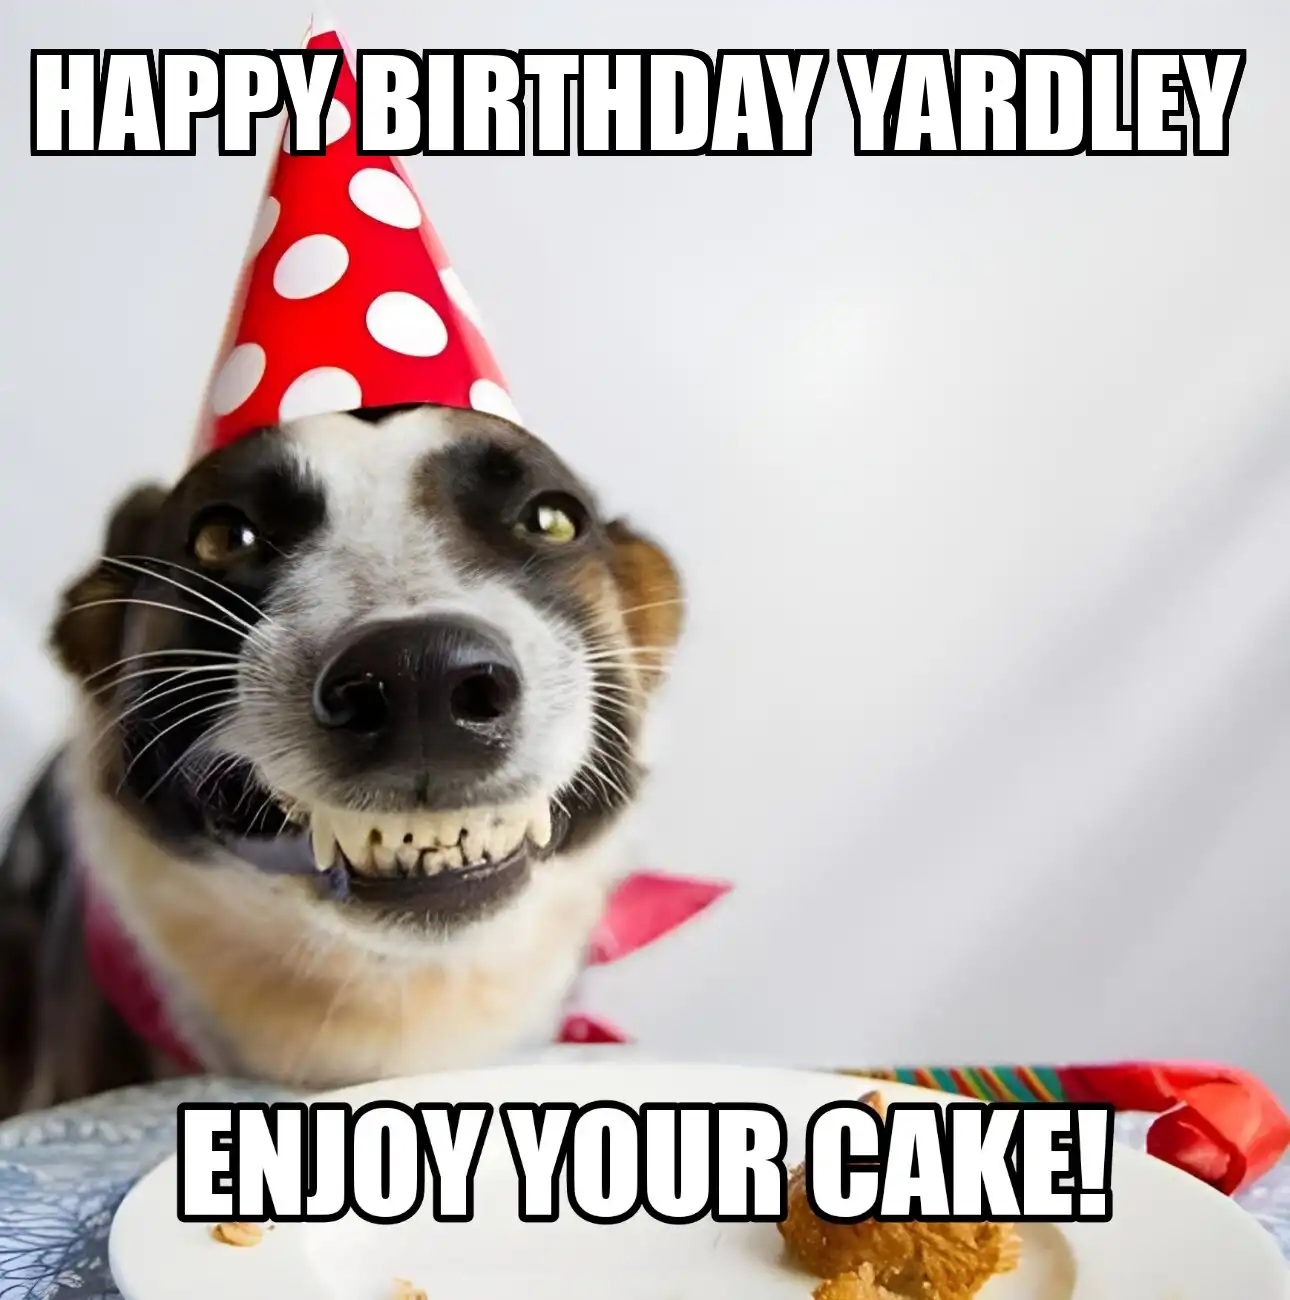 Happy Birthday Yardley Enjoy Your Cake Dog Meme